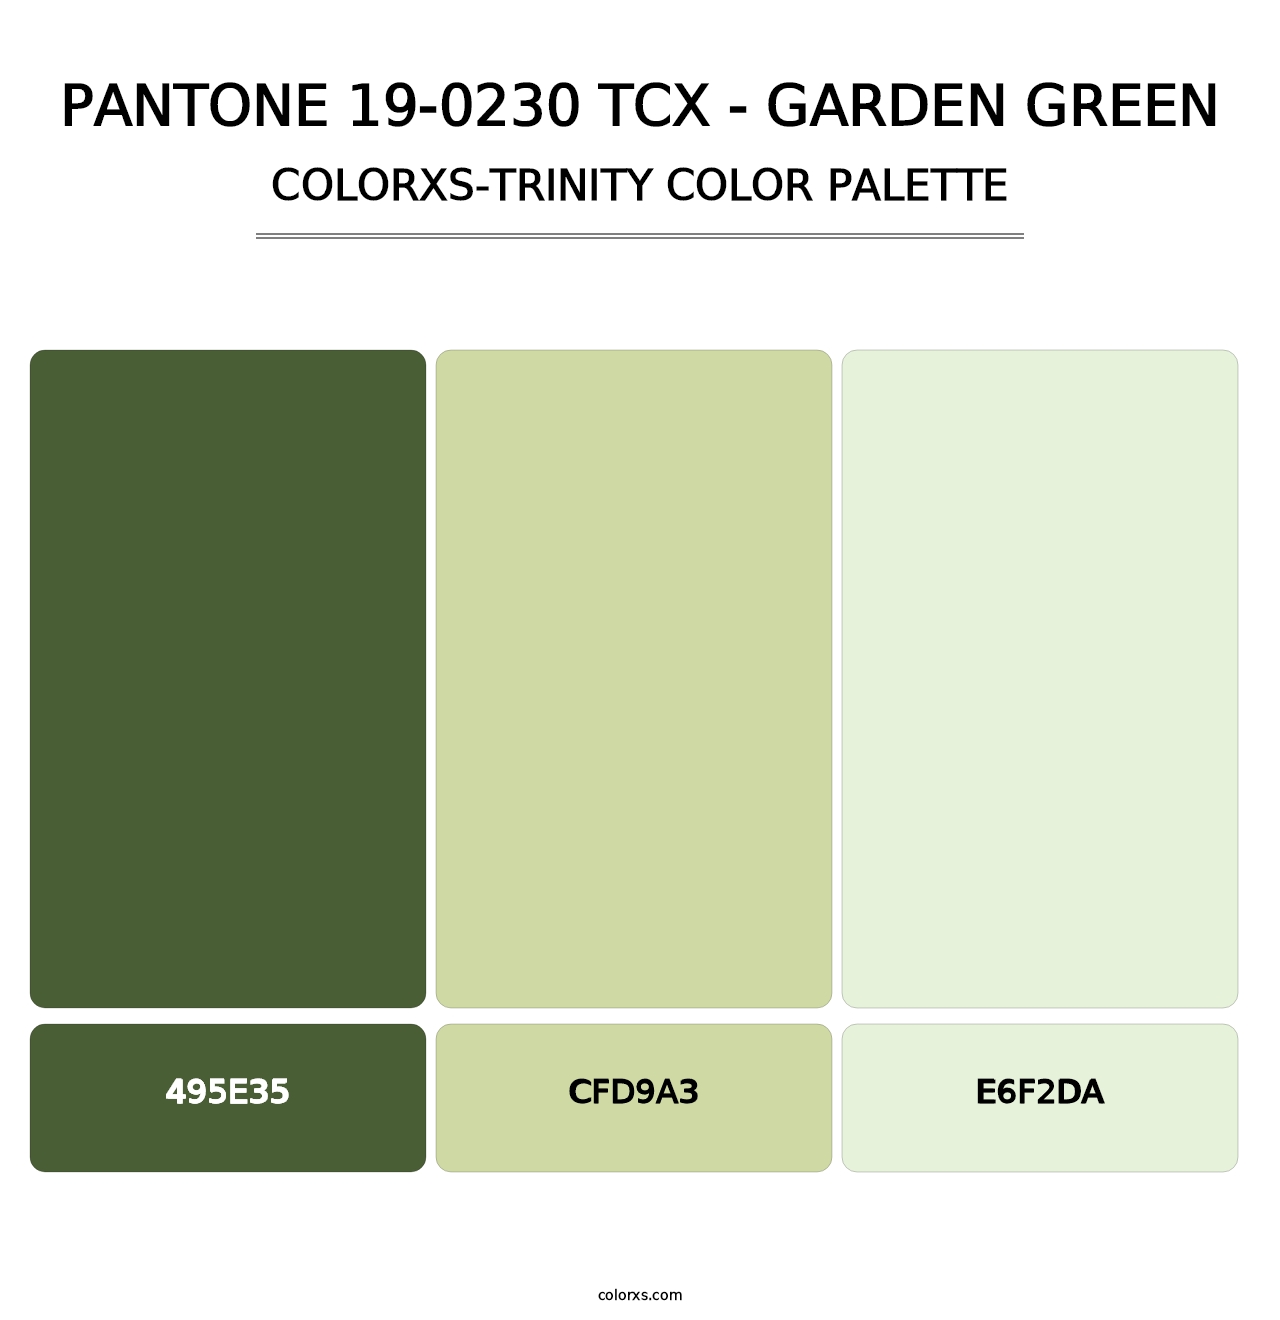 PANTONE 19-0230 TCX - Garden Green - Colorxs Trinity Palette